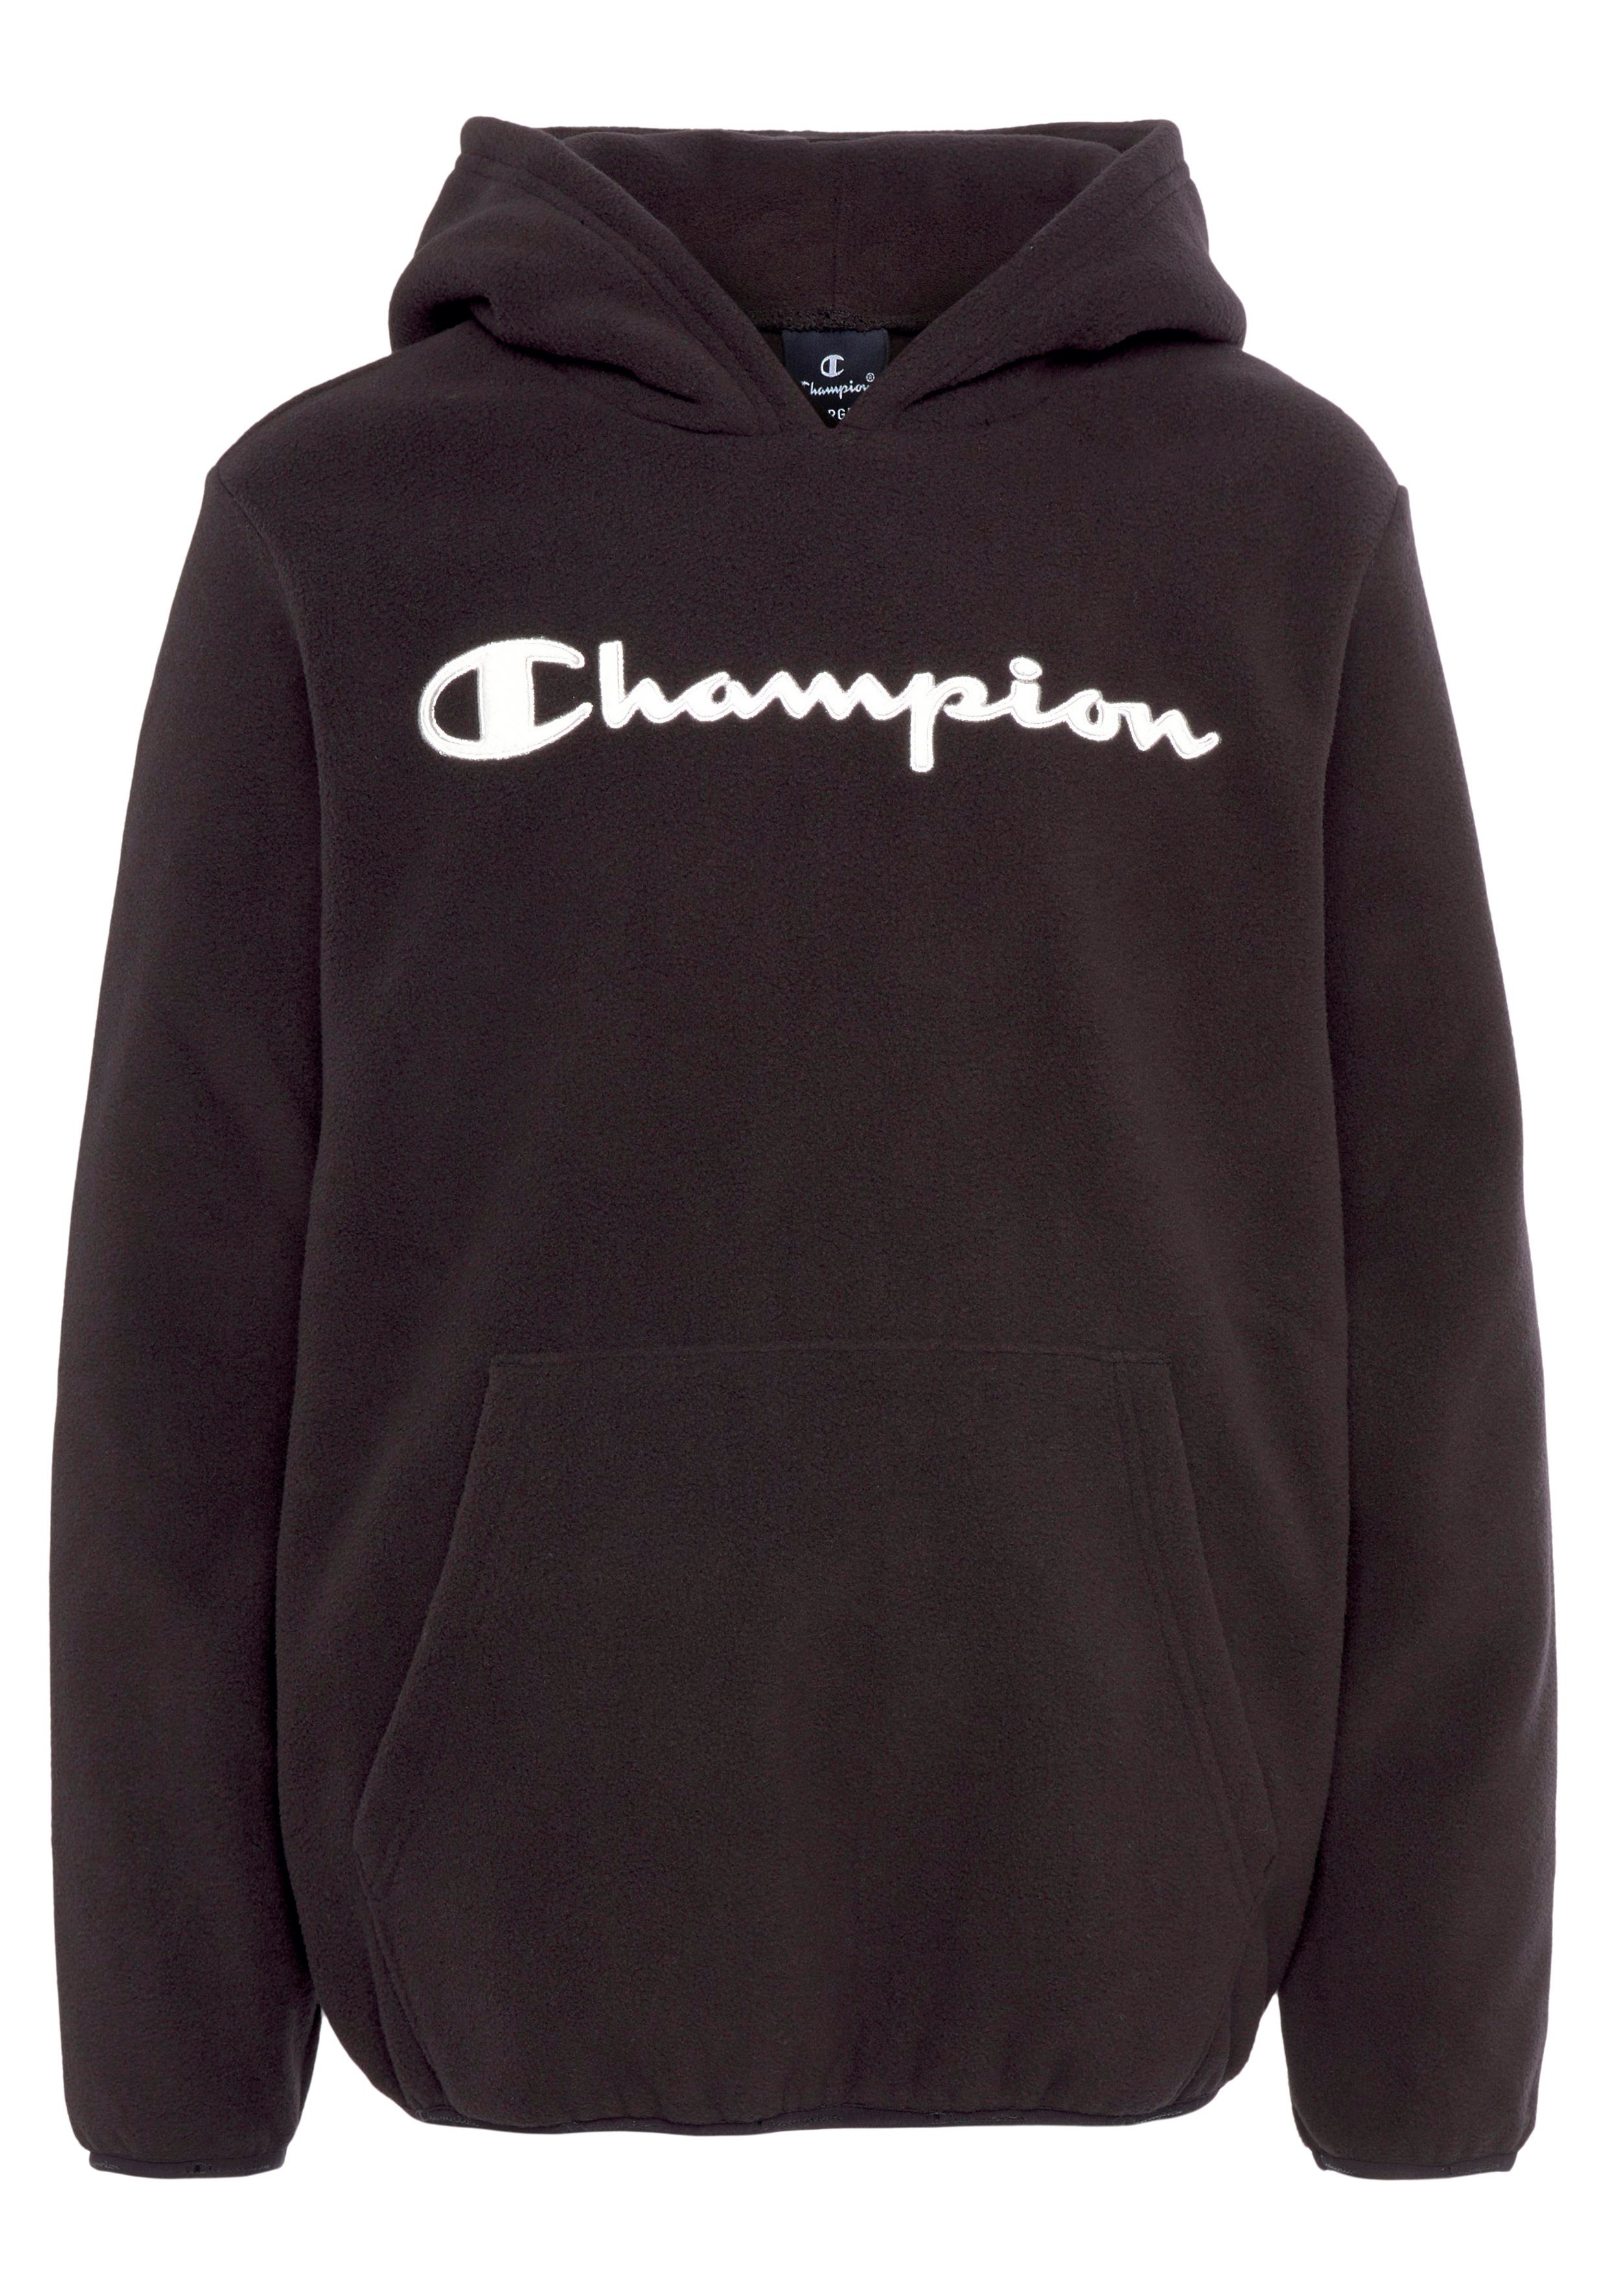 【Juwel】 Champion Sweatshirt für Kinder